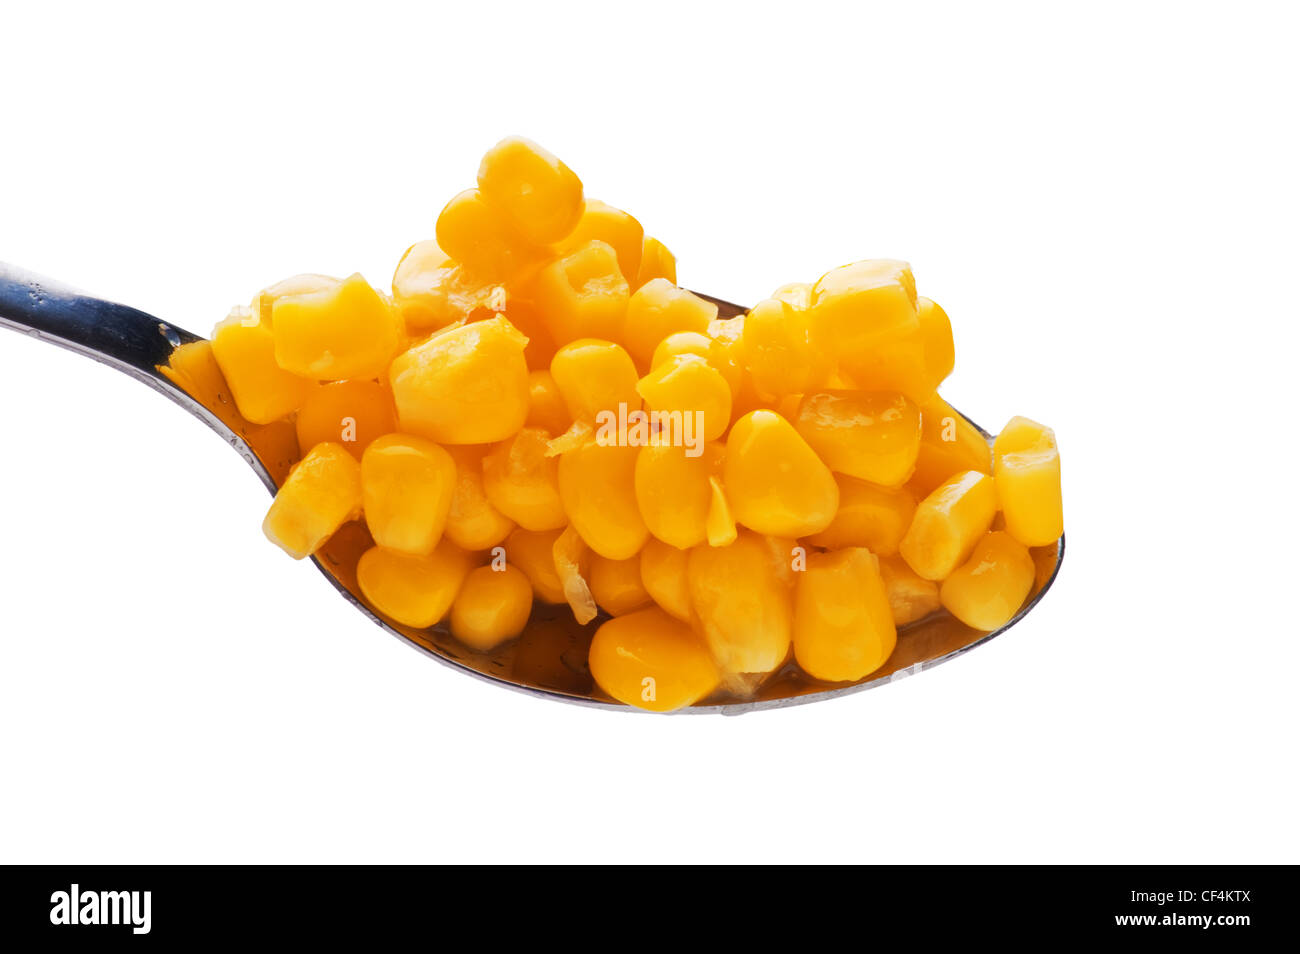 Objekt auf weiß - Essen Mais im Löffel Stockfoto